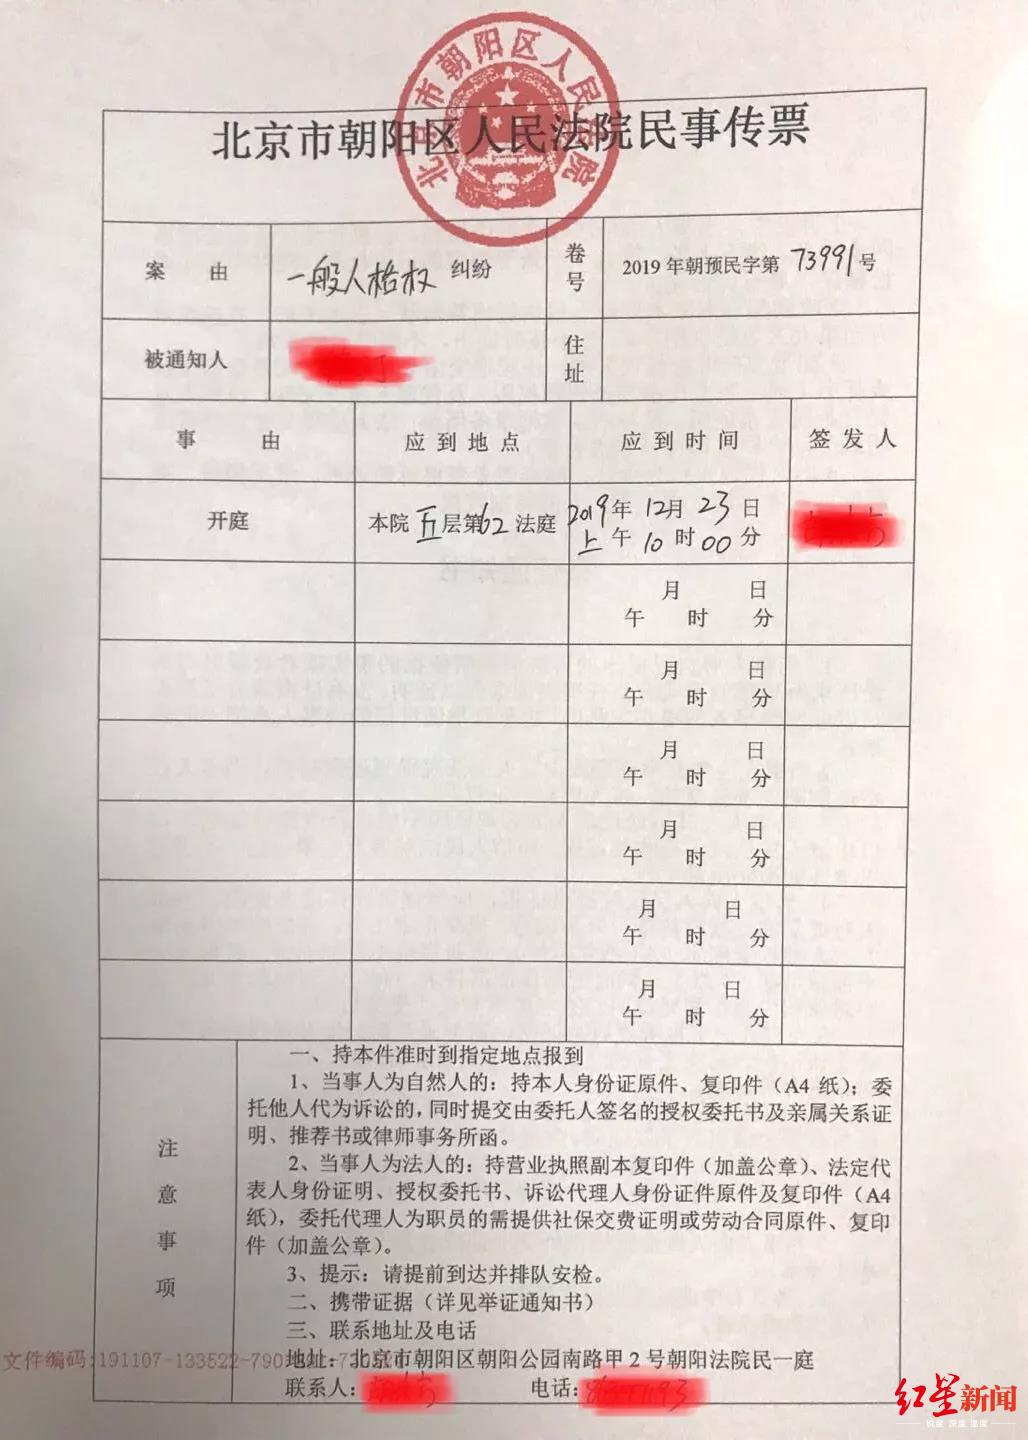 北京单身女子冻卵被拒起诉医院,首例未婚冻卵案背后的两难 